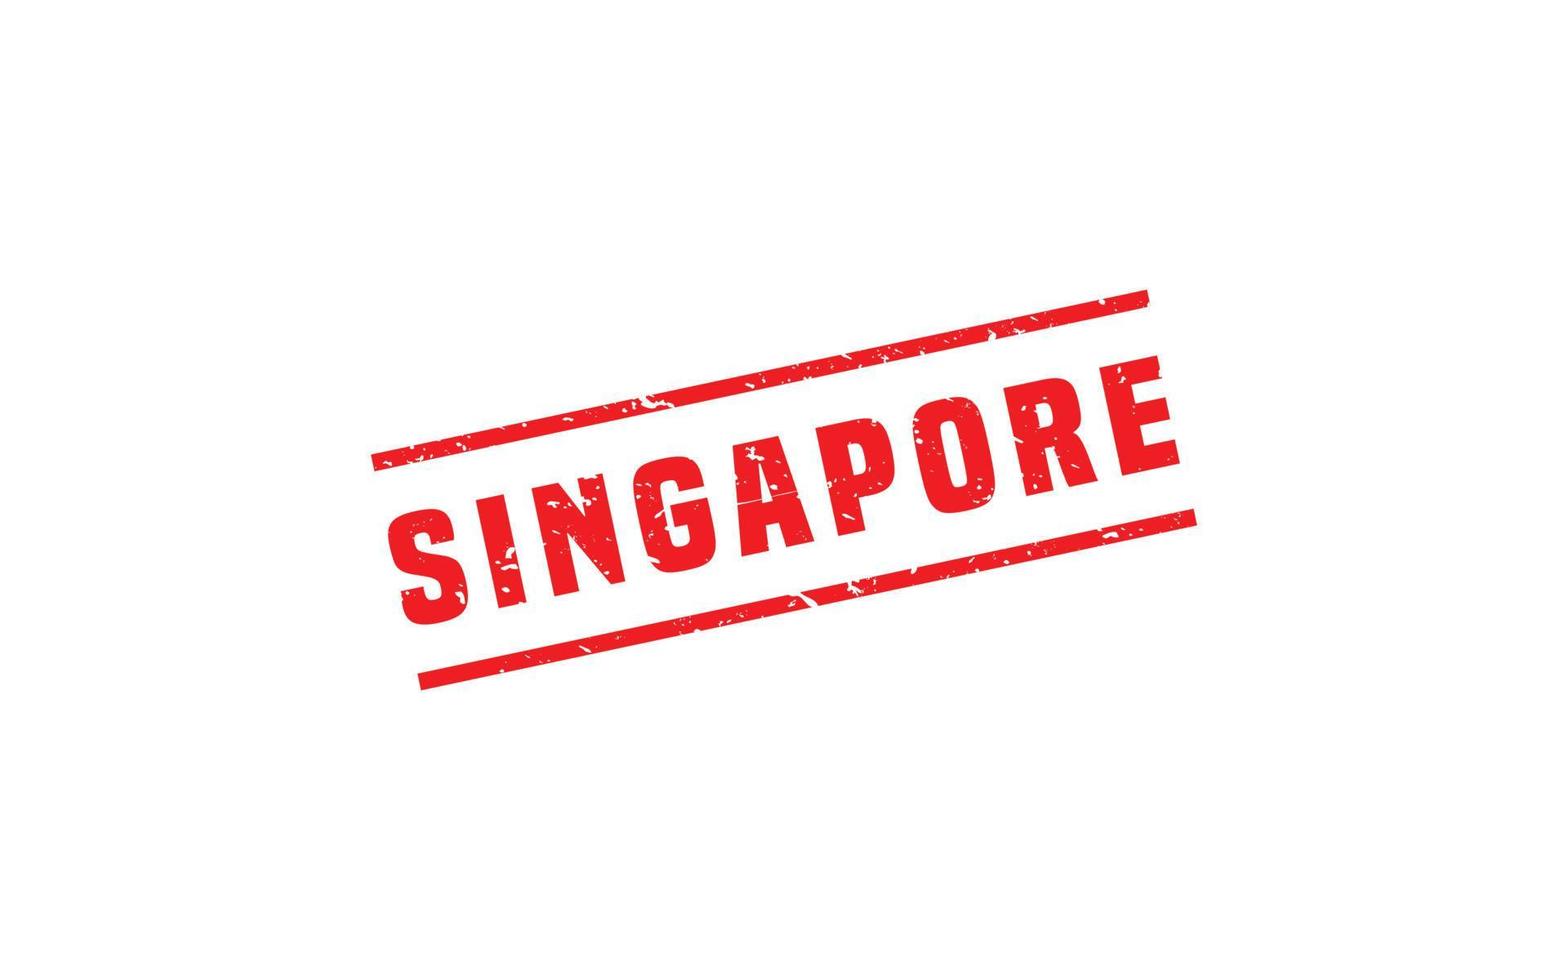 Singapur-Stempelgummi mit Grunge-Stil auf weißem Hintergrund vektor